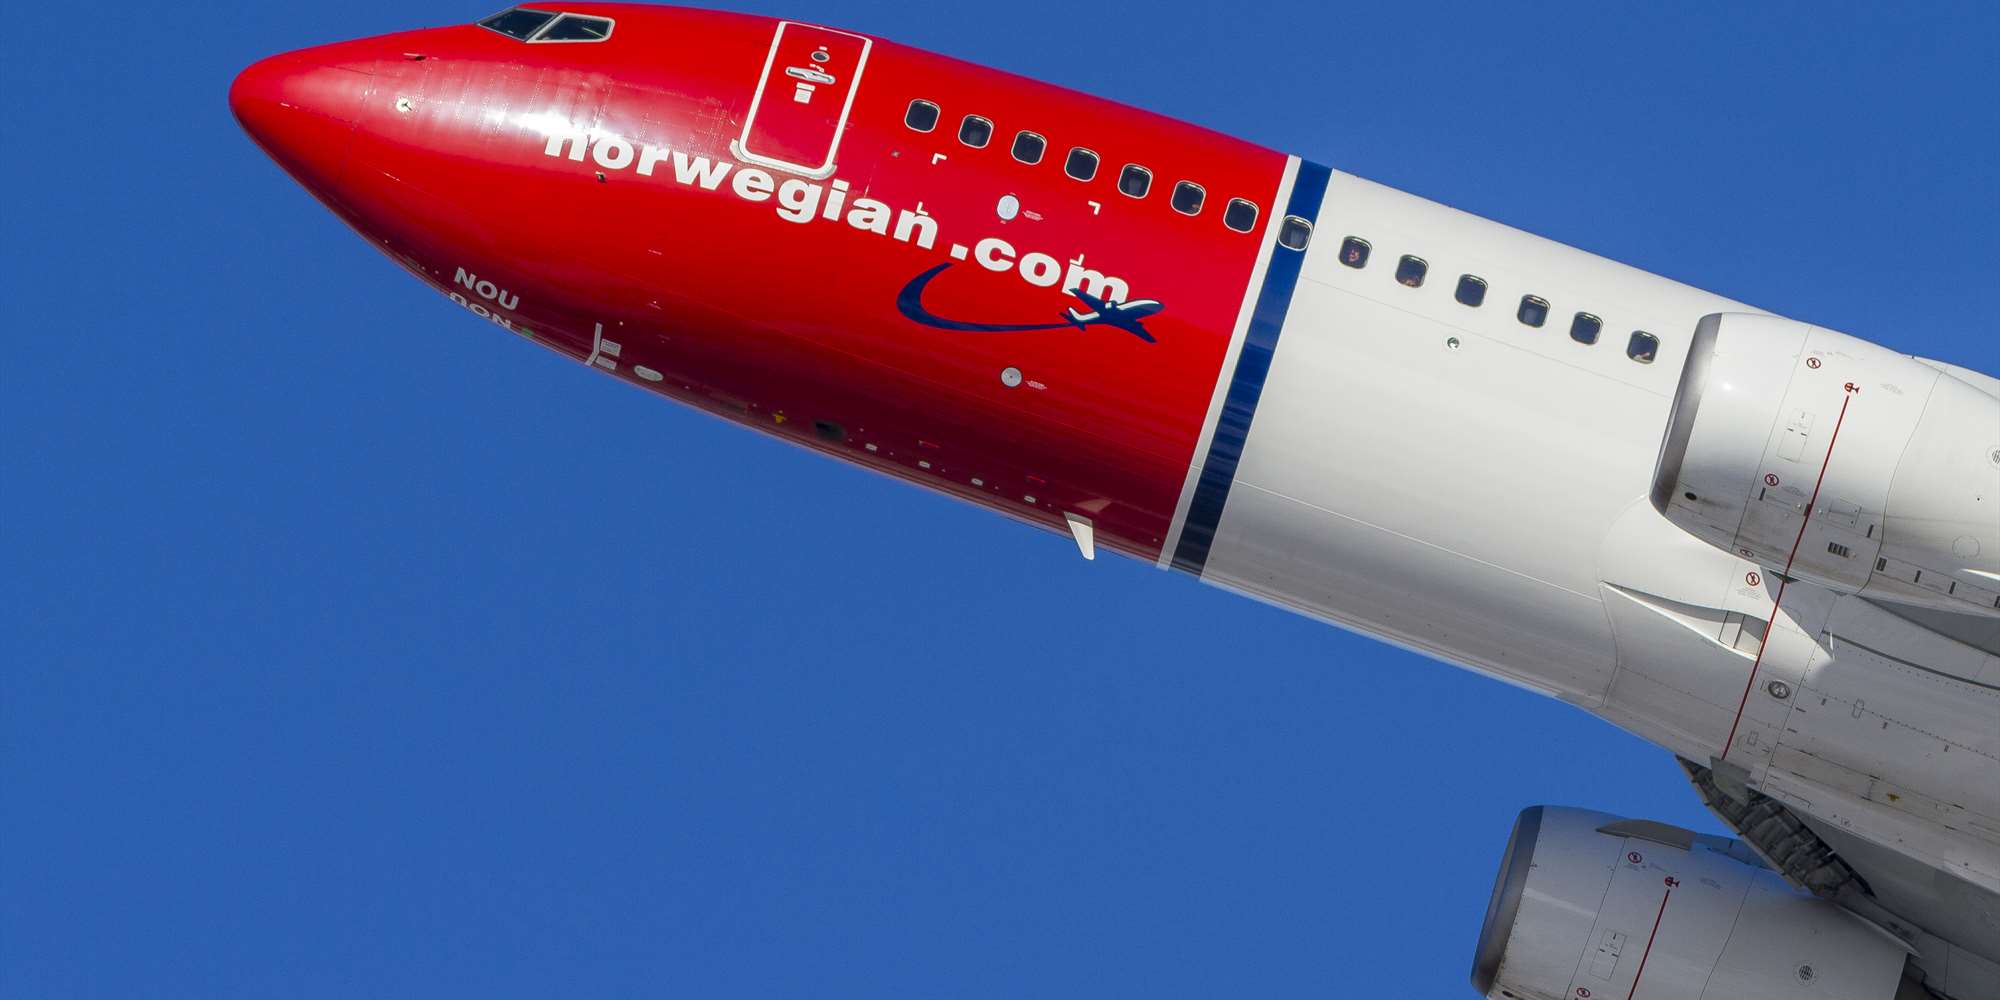 Resultado de imagen para norwegian air